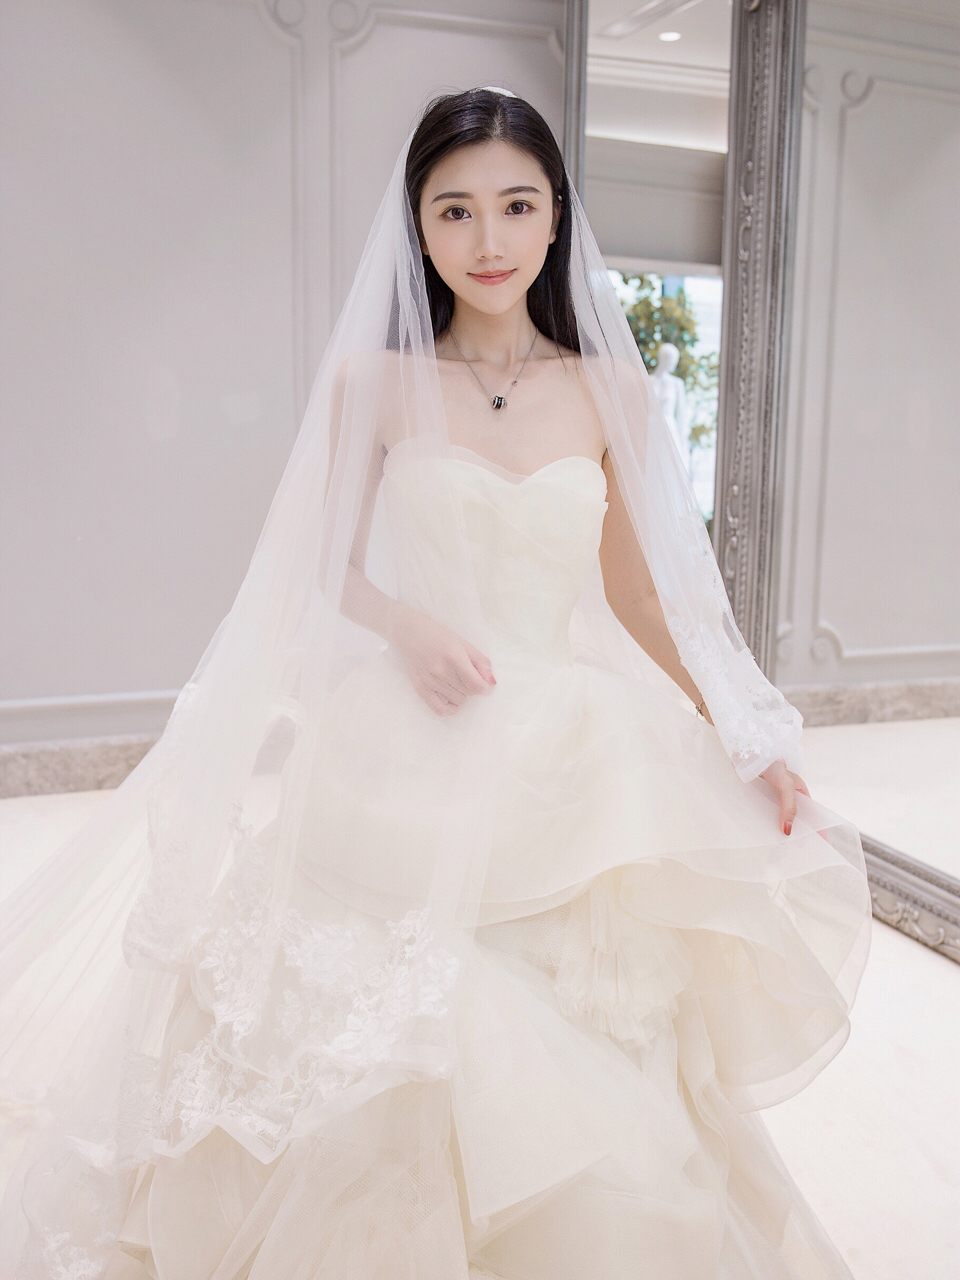 最美的新娘穿漂亮的婚纱,这一定是一场浪漫的婚礼.